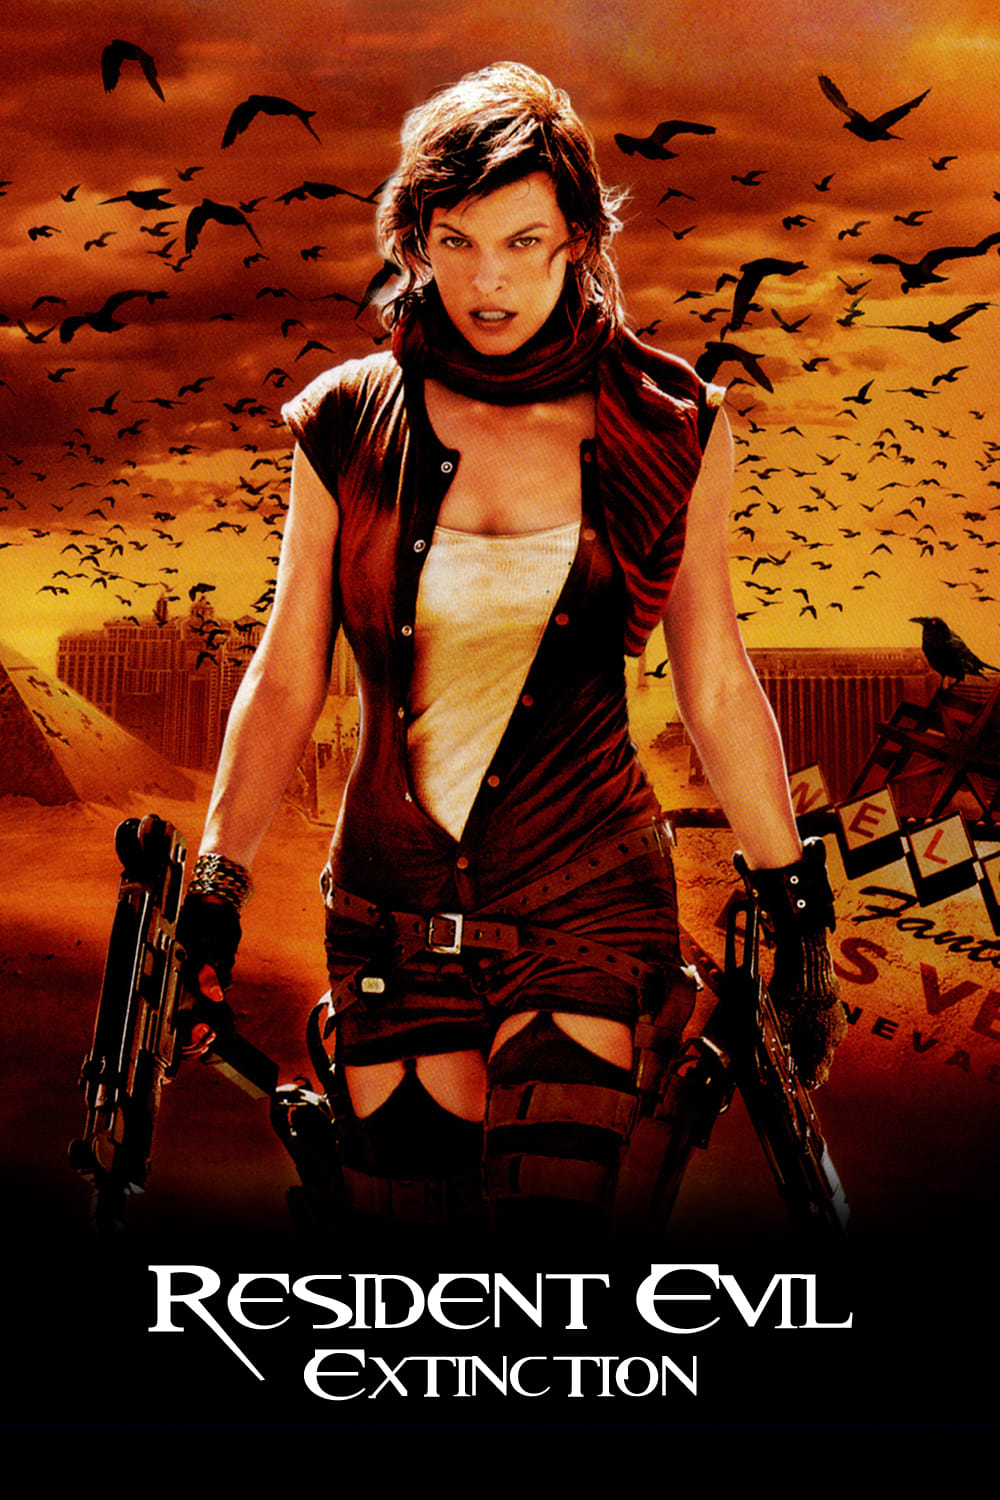 Resident evil 3: extinction 2007 4k quality